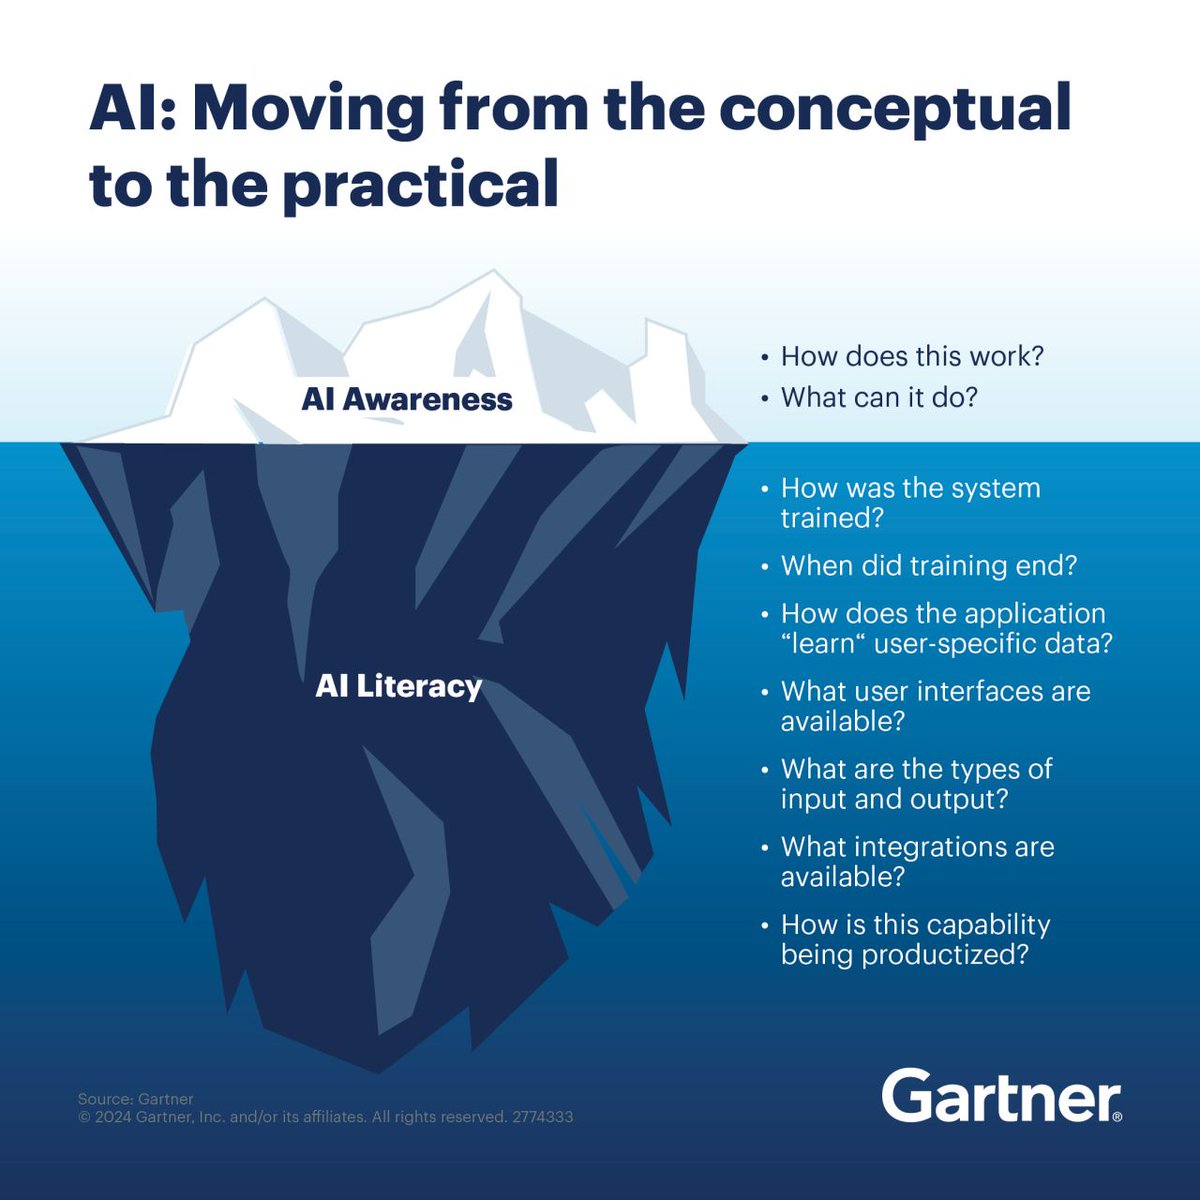 AI is no longer an innovation; it has become a permanent fixture of an organization’s technological landscape.

Gain expert guidance on how to build an AI literacy program: gtnr.it/3JFn2bN

#GartnerIT #AI #ArtificialIntelligence #Innovation